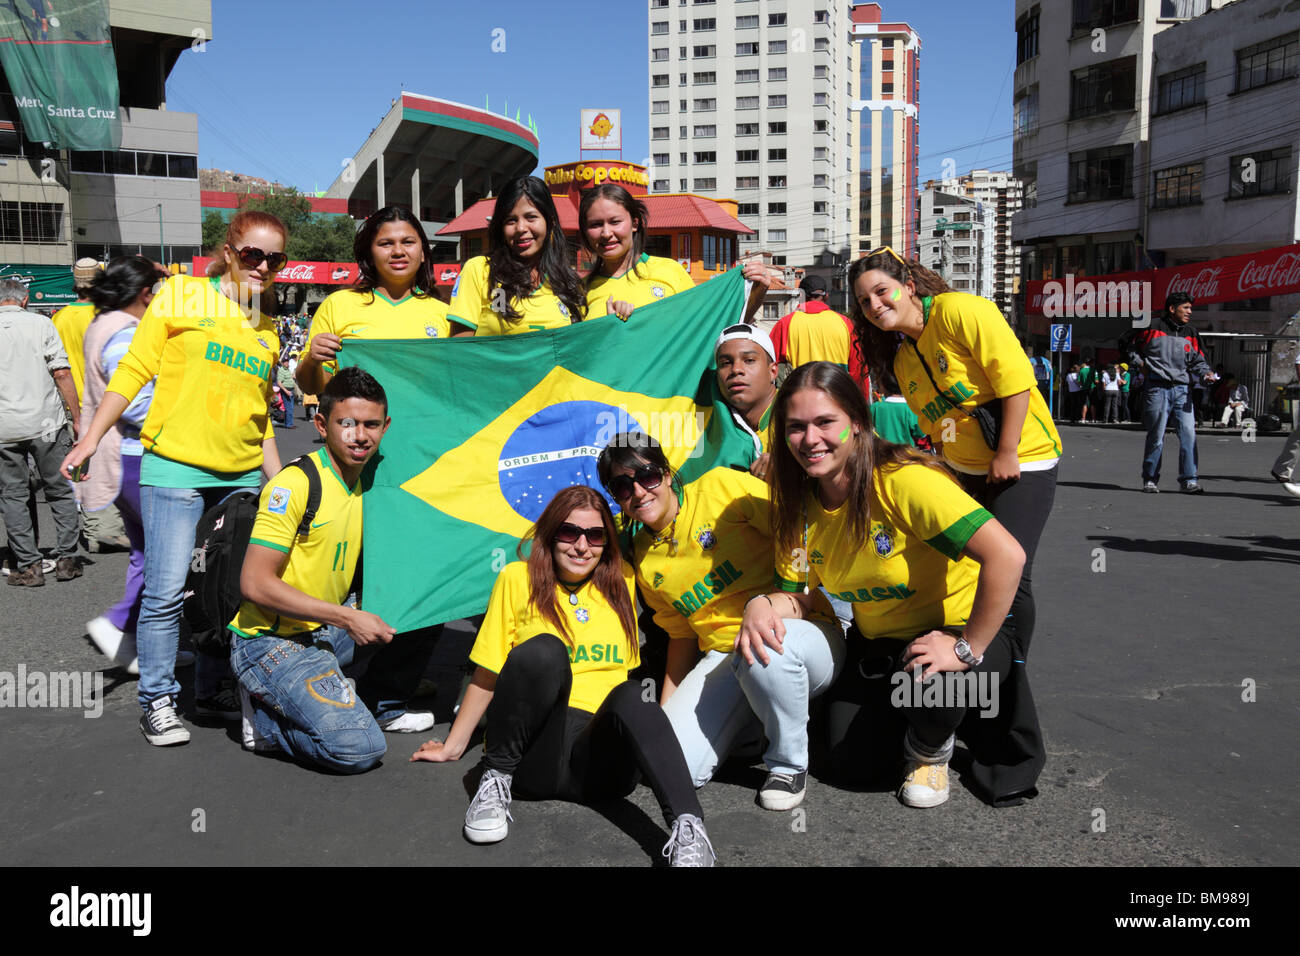 Gli appassionati di calcio brasiliani seguono la loro squadra per una partita di qualificazione per la Coppa del mondo 2014 disputata il 11 ottobre 2009 a la Paz, Bolivia Foto Stock